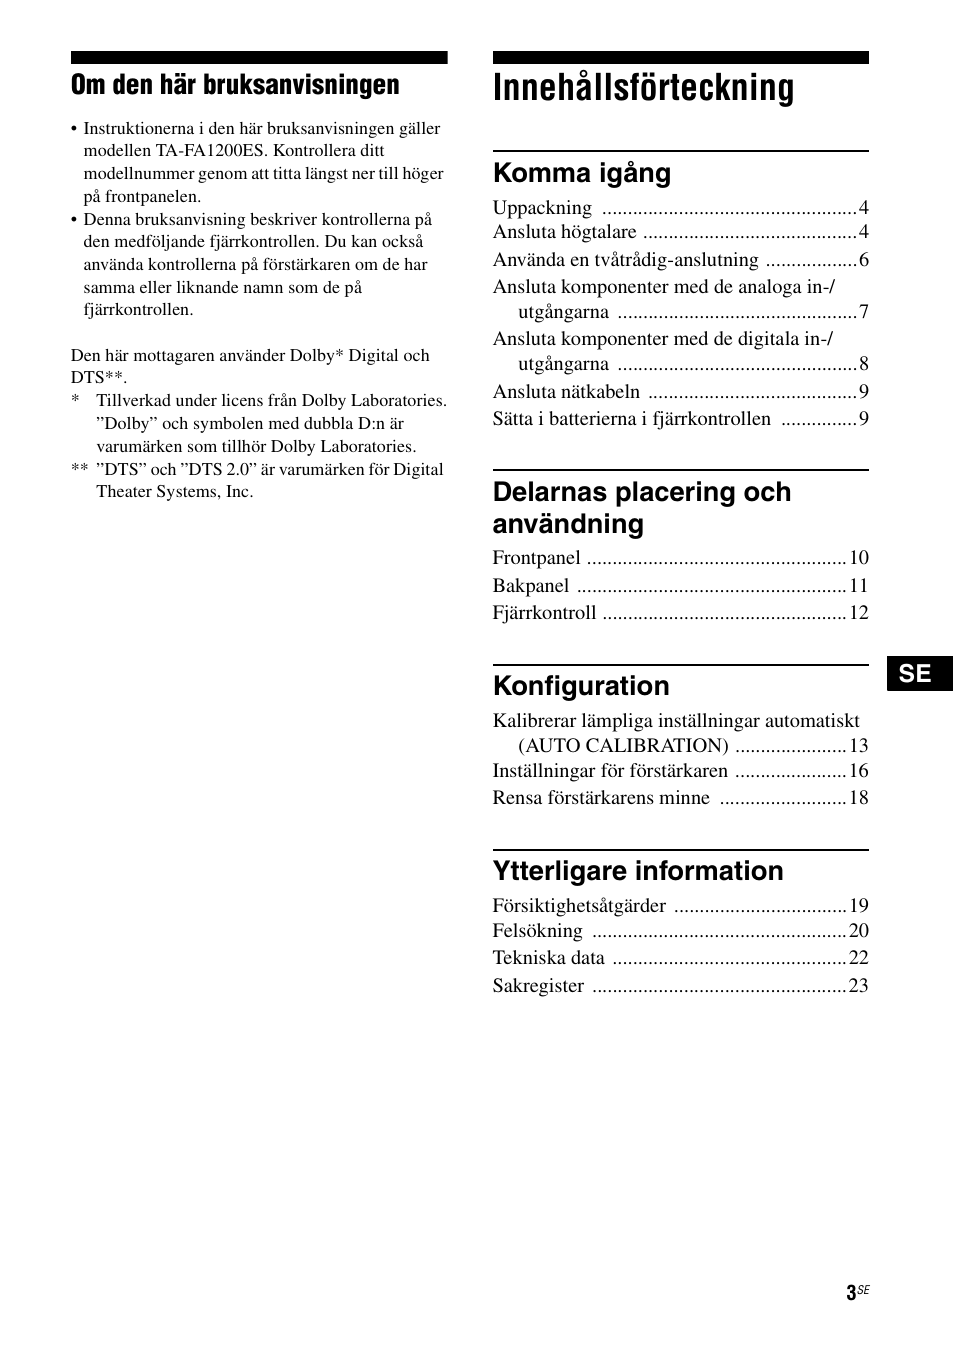 Innehållsförteckning, Om den här bruksanvisningen, Komma igång | Delarnas placering och användning, Konfiguration, Ytterligare information | Sony TA-FA1200ES User Manual | Page 47 / 91